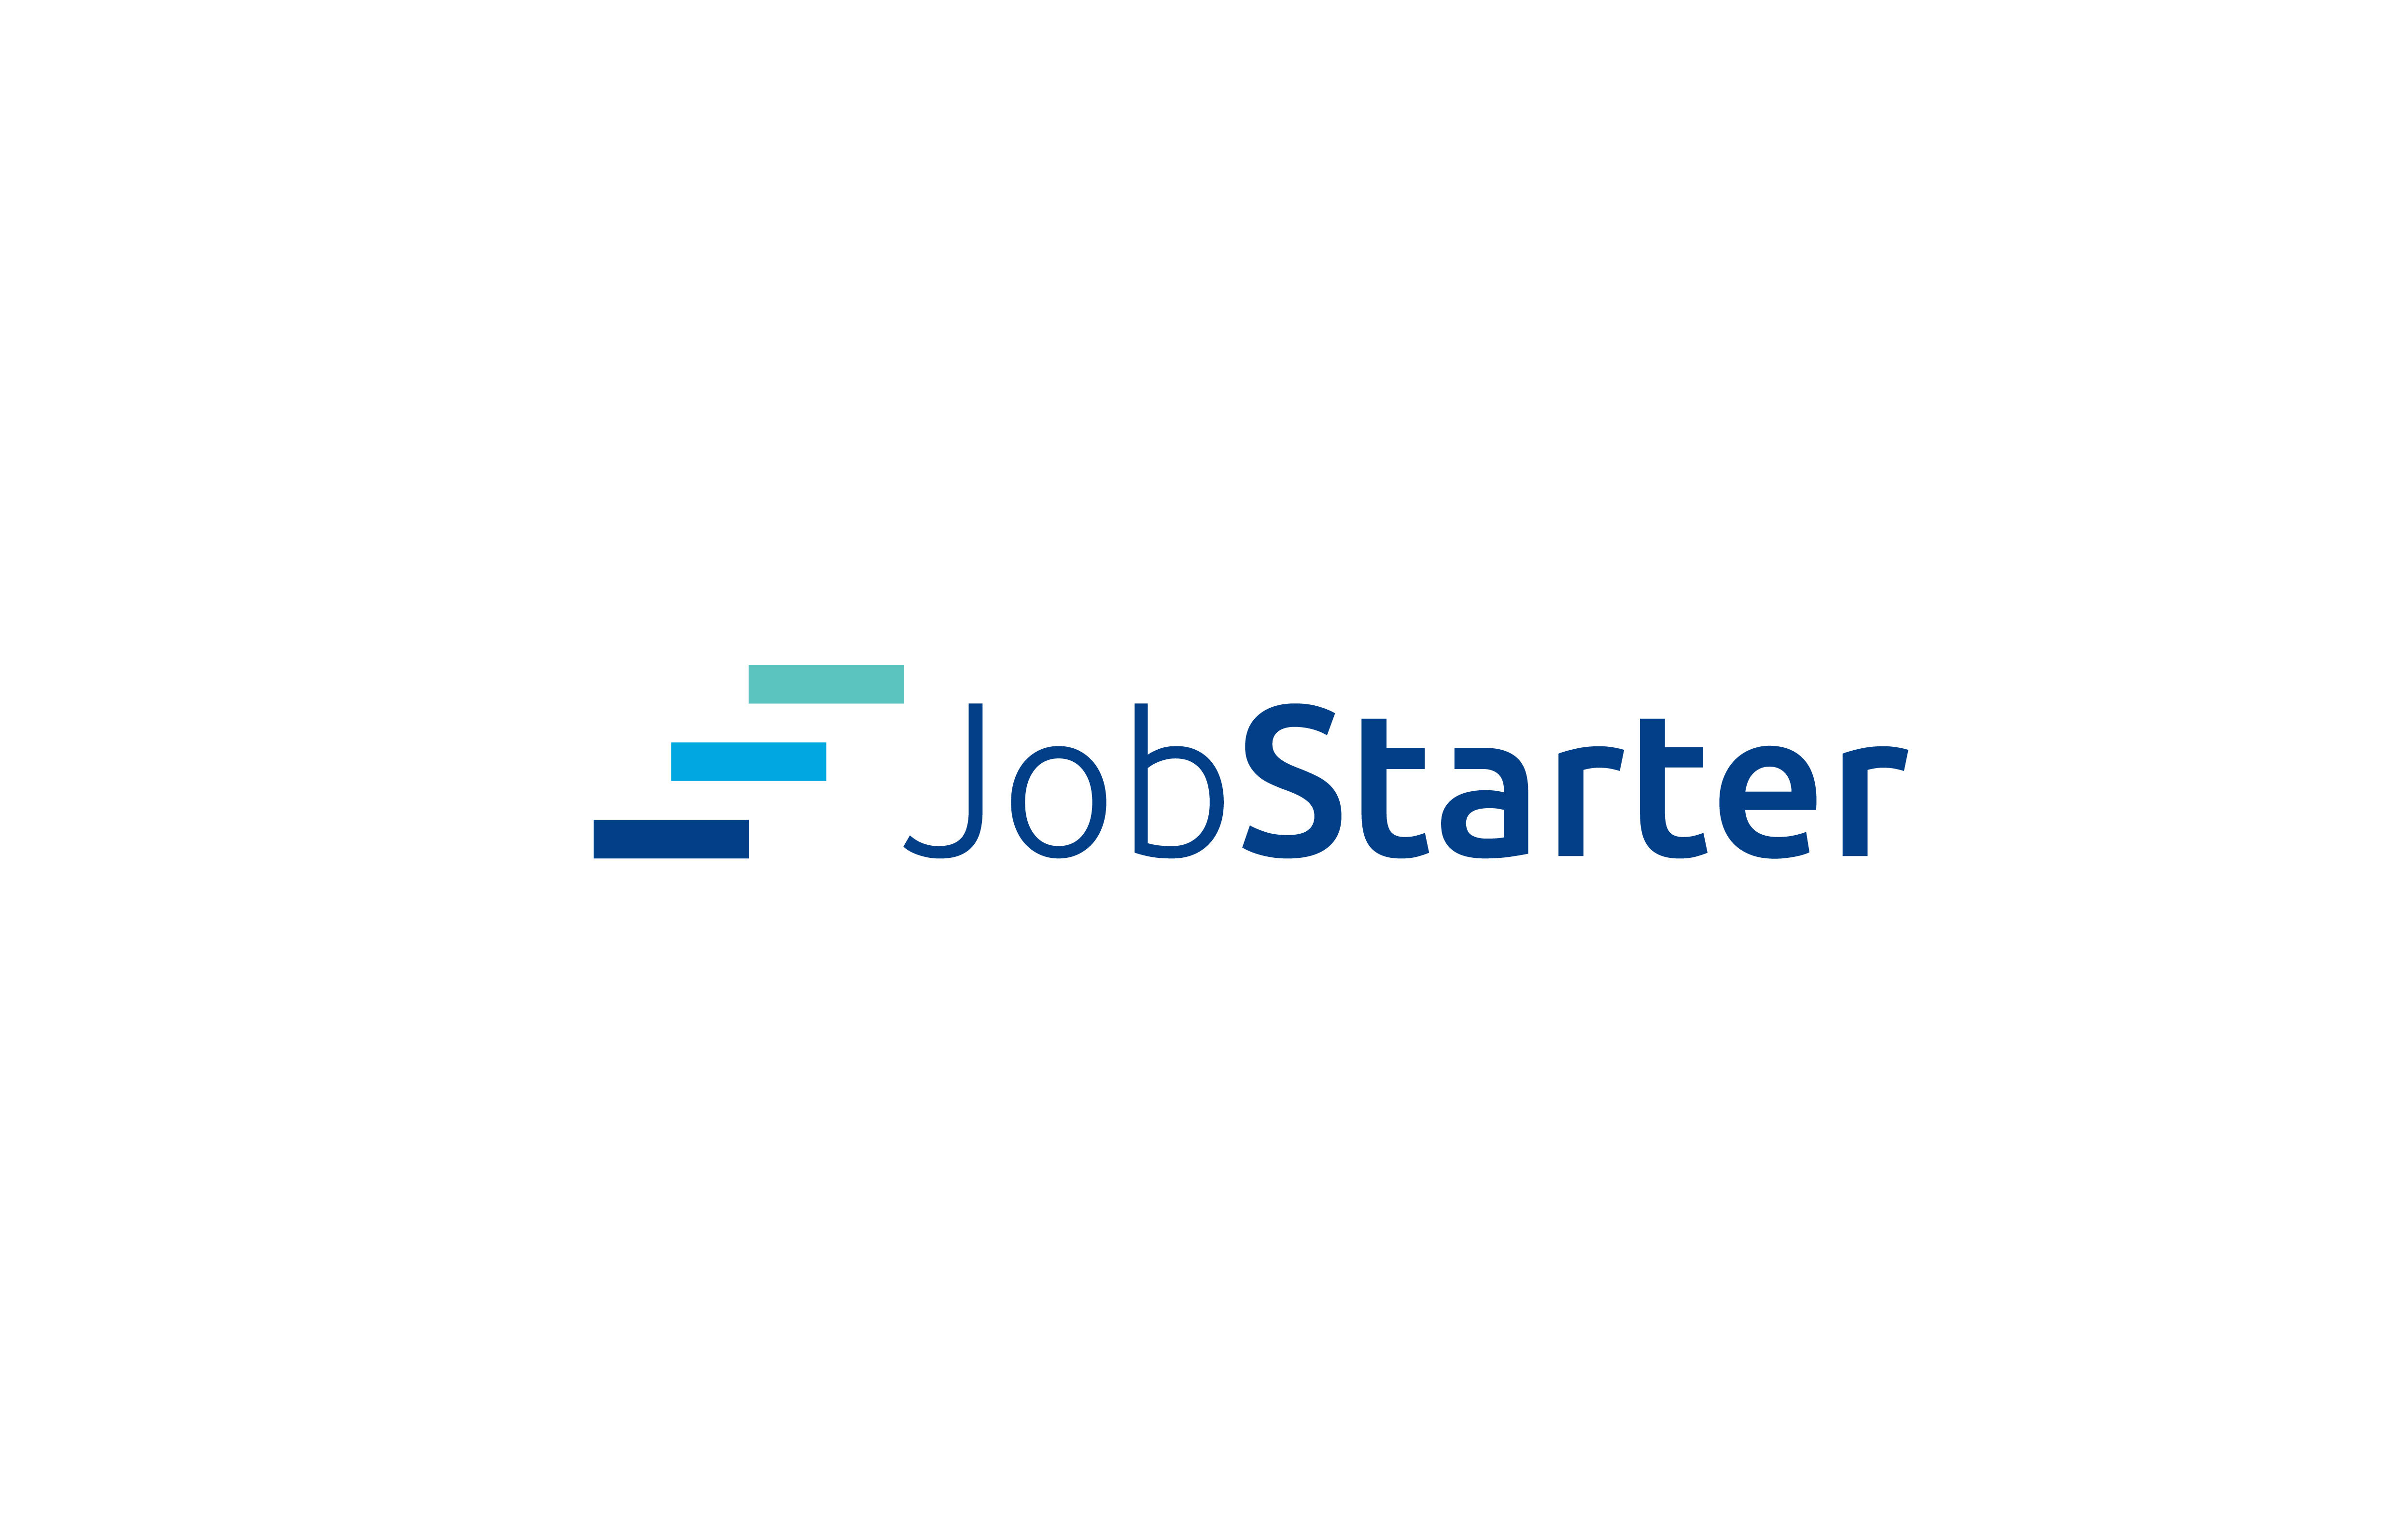 JobStarter